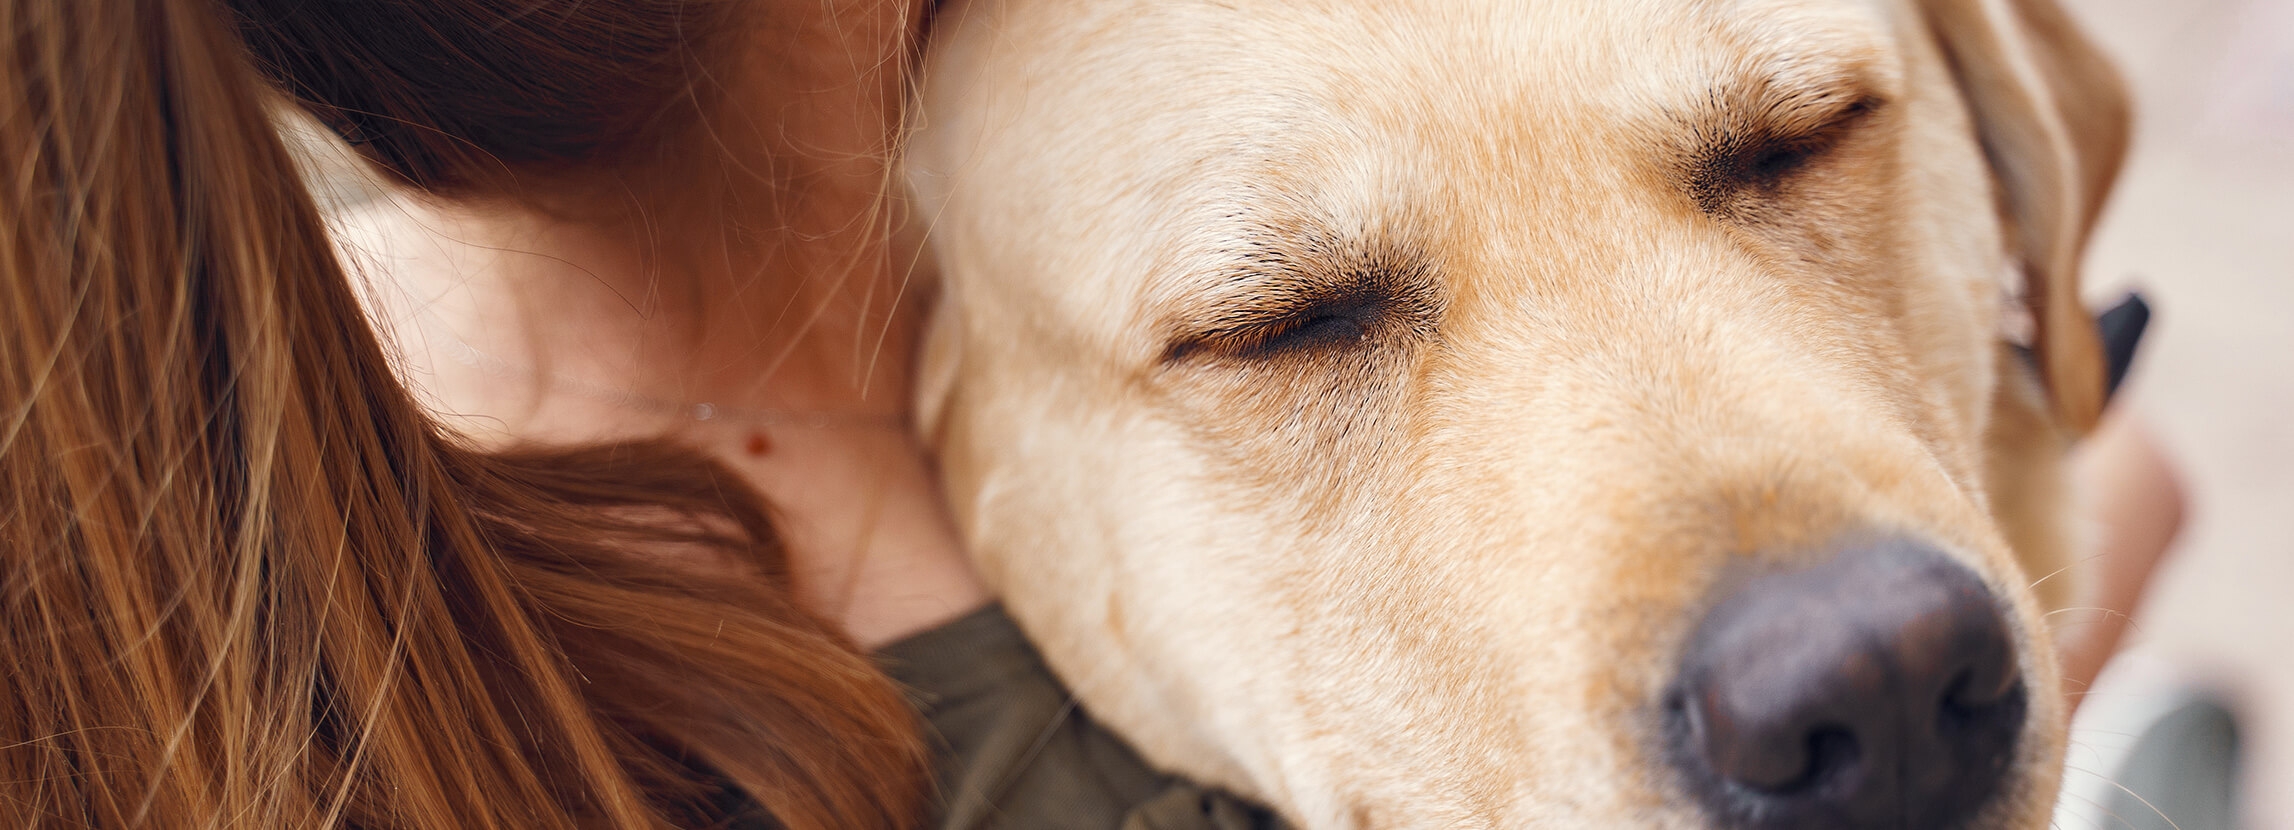 Dogoterapie - terapie z udziałem psa